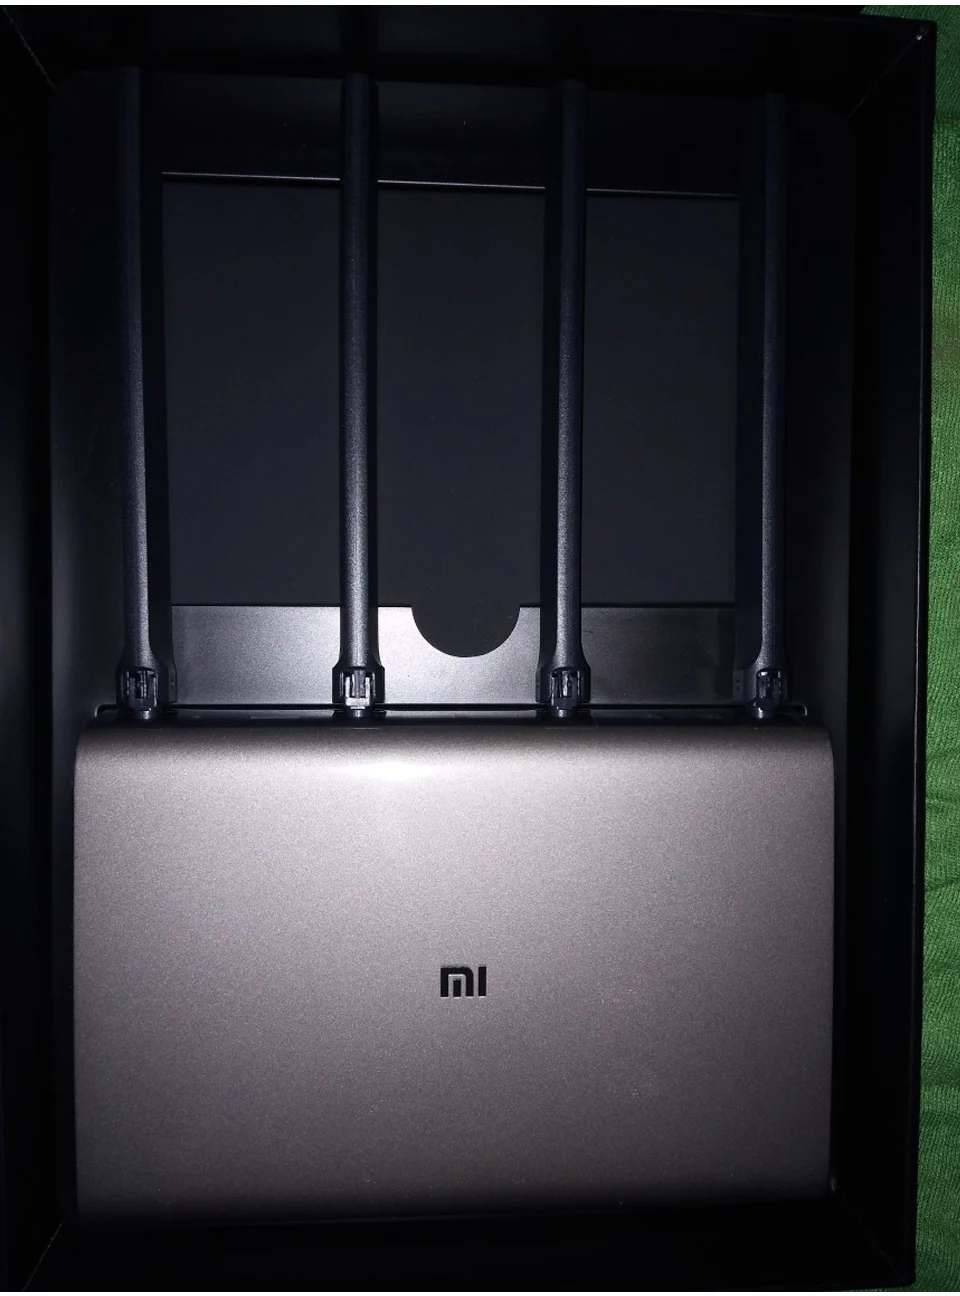 Xiaomi mi роутер Pro Wi-Fi ретранслятор AC2600 2,4G/5 GHz двухдиапазонный приложение управление беспроводной металлический корпус MU-mi MO роутеры